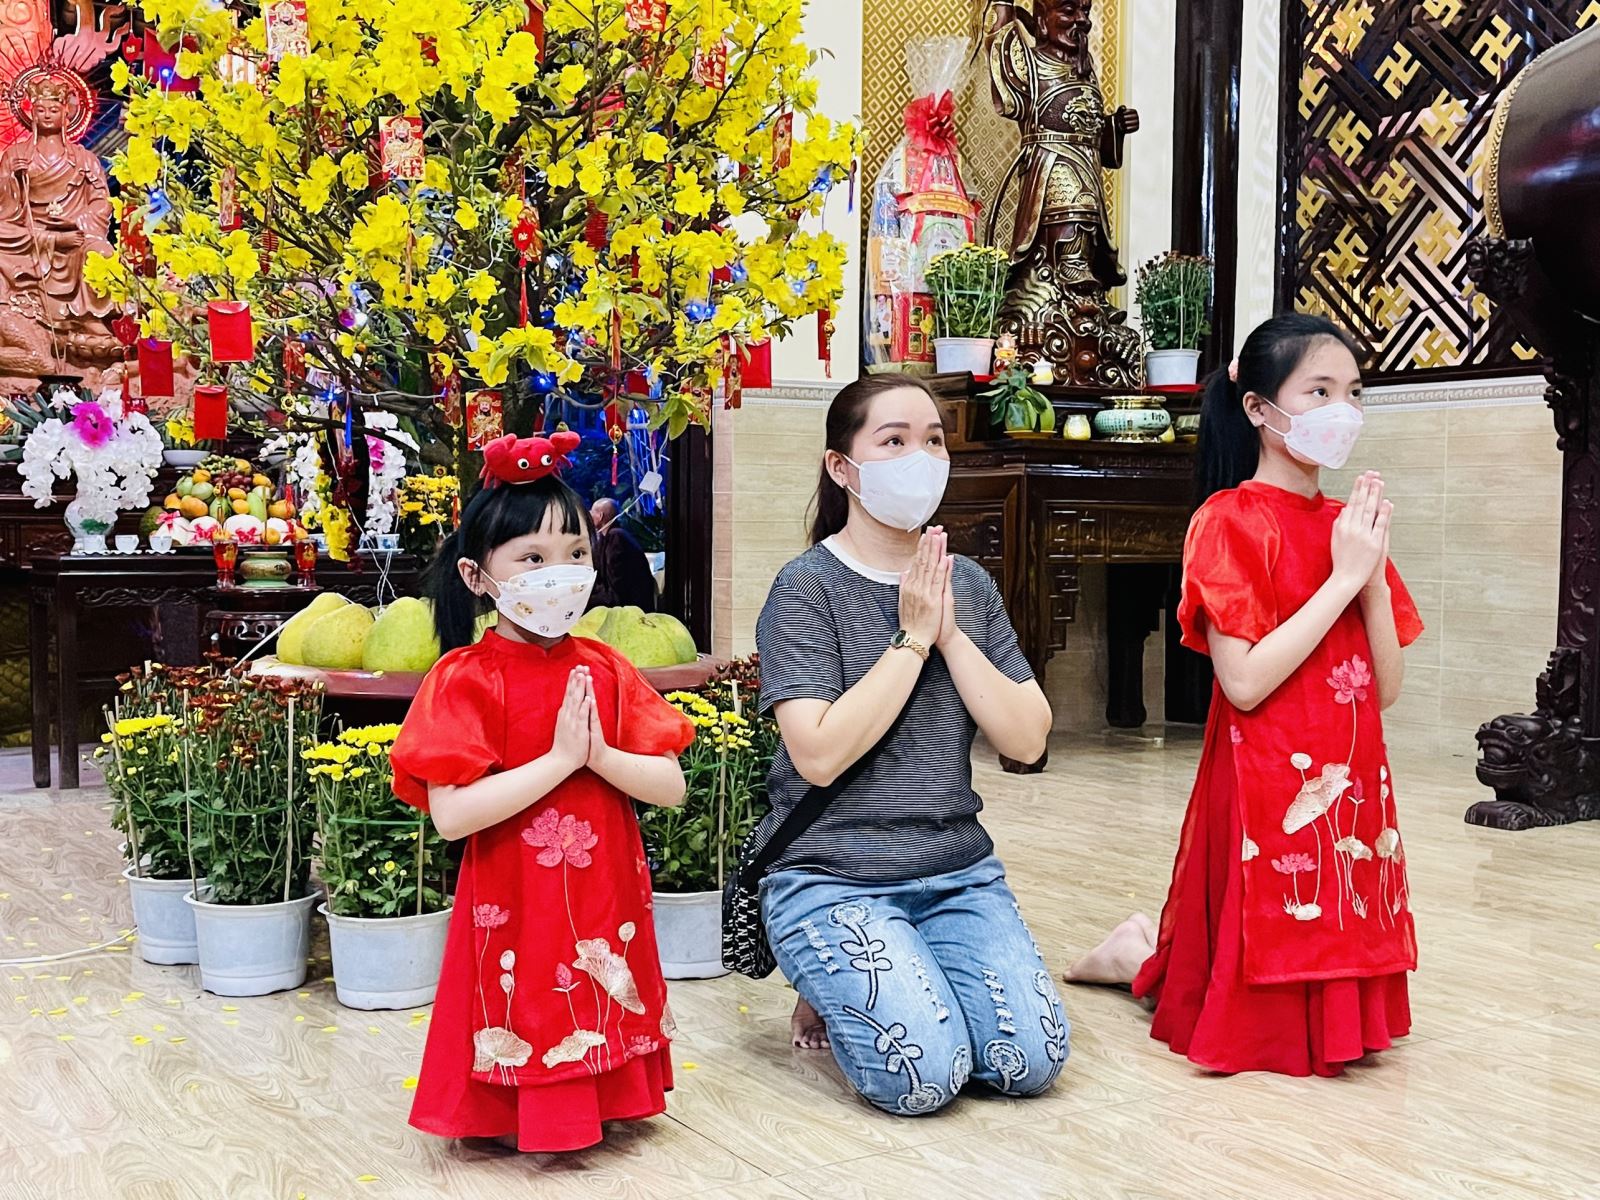 Lễ chùa mùng 1 Tết tại Thành phố Hồ Chí Minh là một trong những hoạt động truyền thống được nhiều người dân ưa chuộng. Hãy xem hình ảnh liên quan để tìm hiểu thêm về nghi lễ đầy ý nghĩa này, để cảm nhận sự tâm linh, sự cầu nguyện và sự yêu thương đối với mọi người.